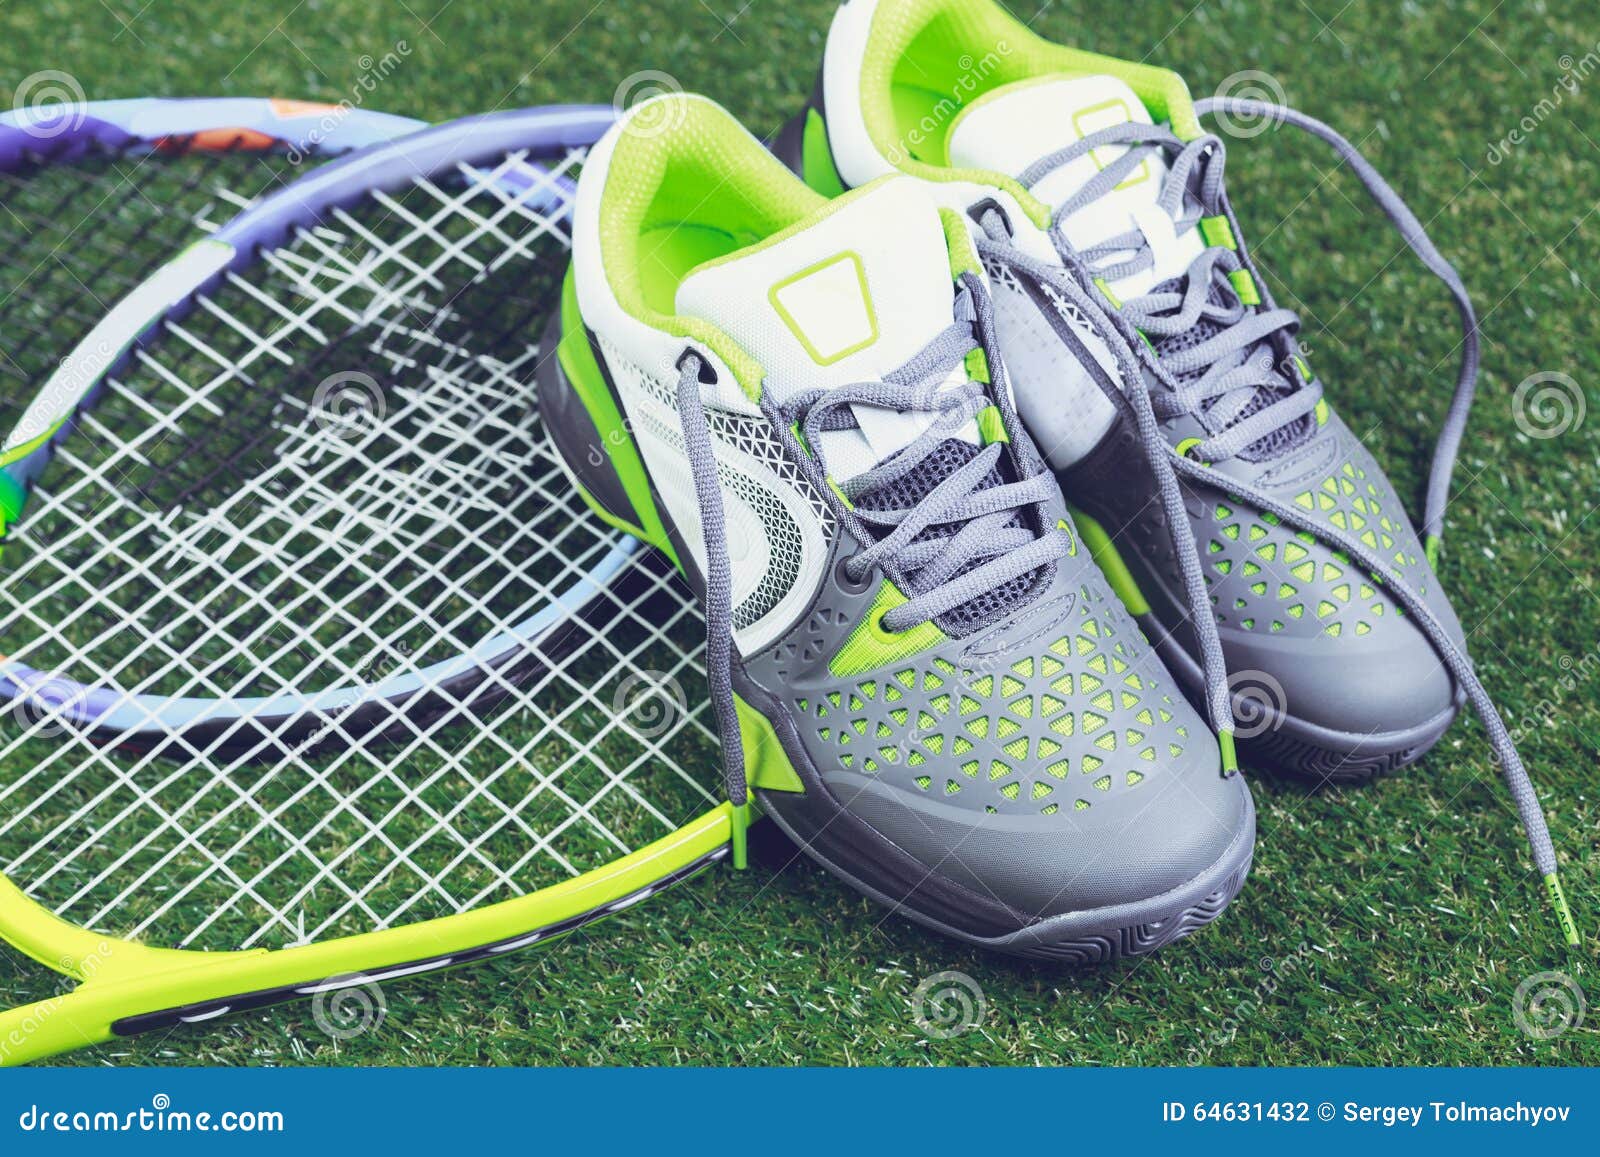 Tennis equipment stock photo. Image of player, yellow - 64631432